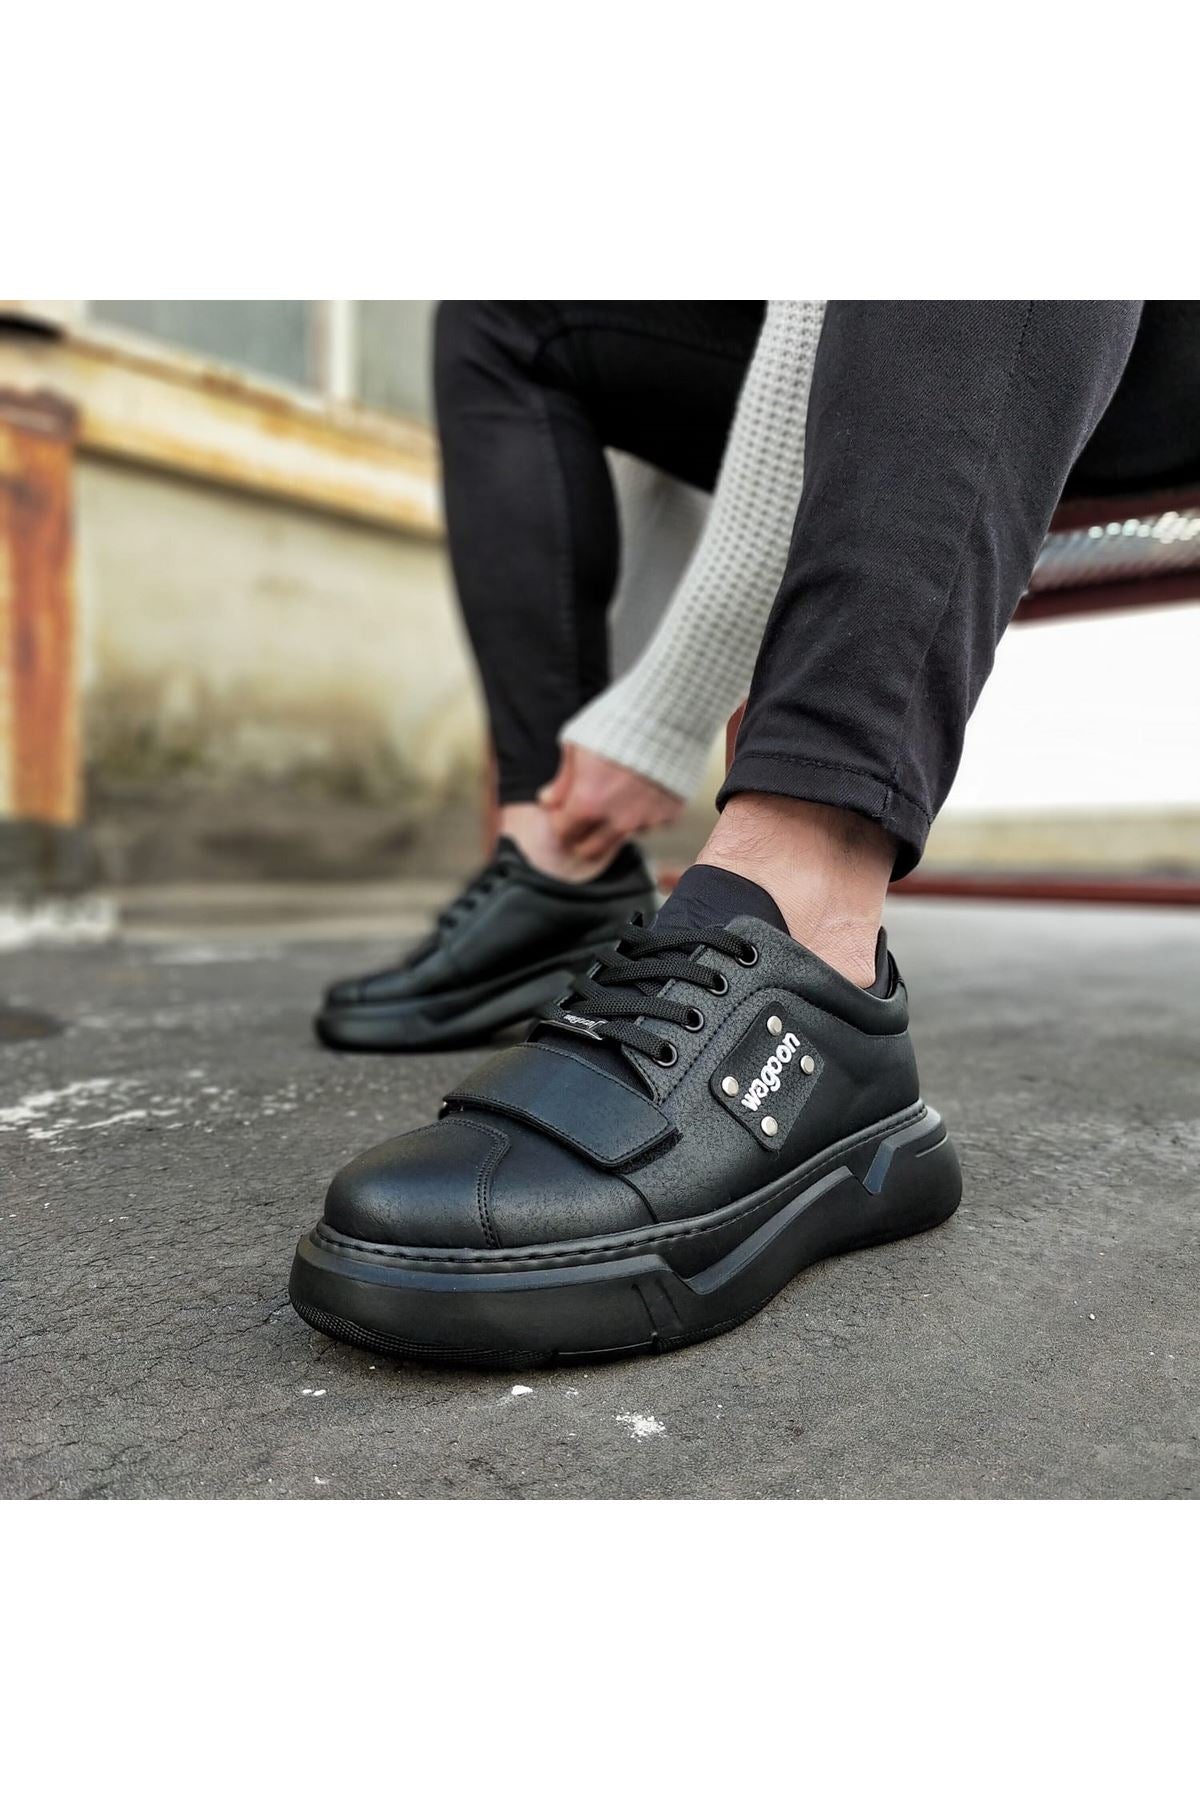 Original Design WG018 Coal Mens High Sole Shoes - STREETMODE™